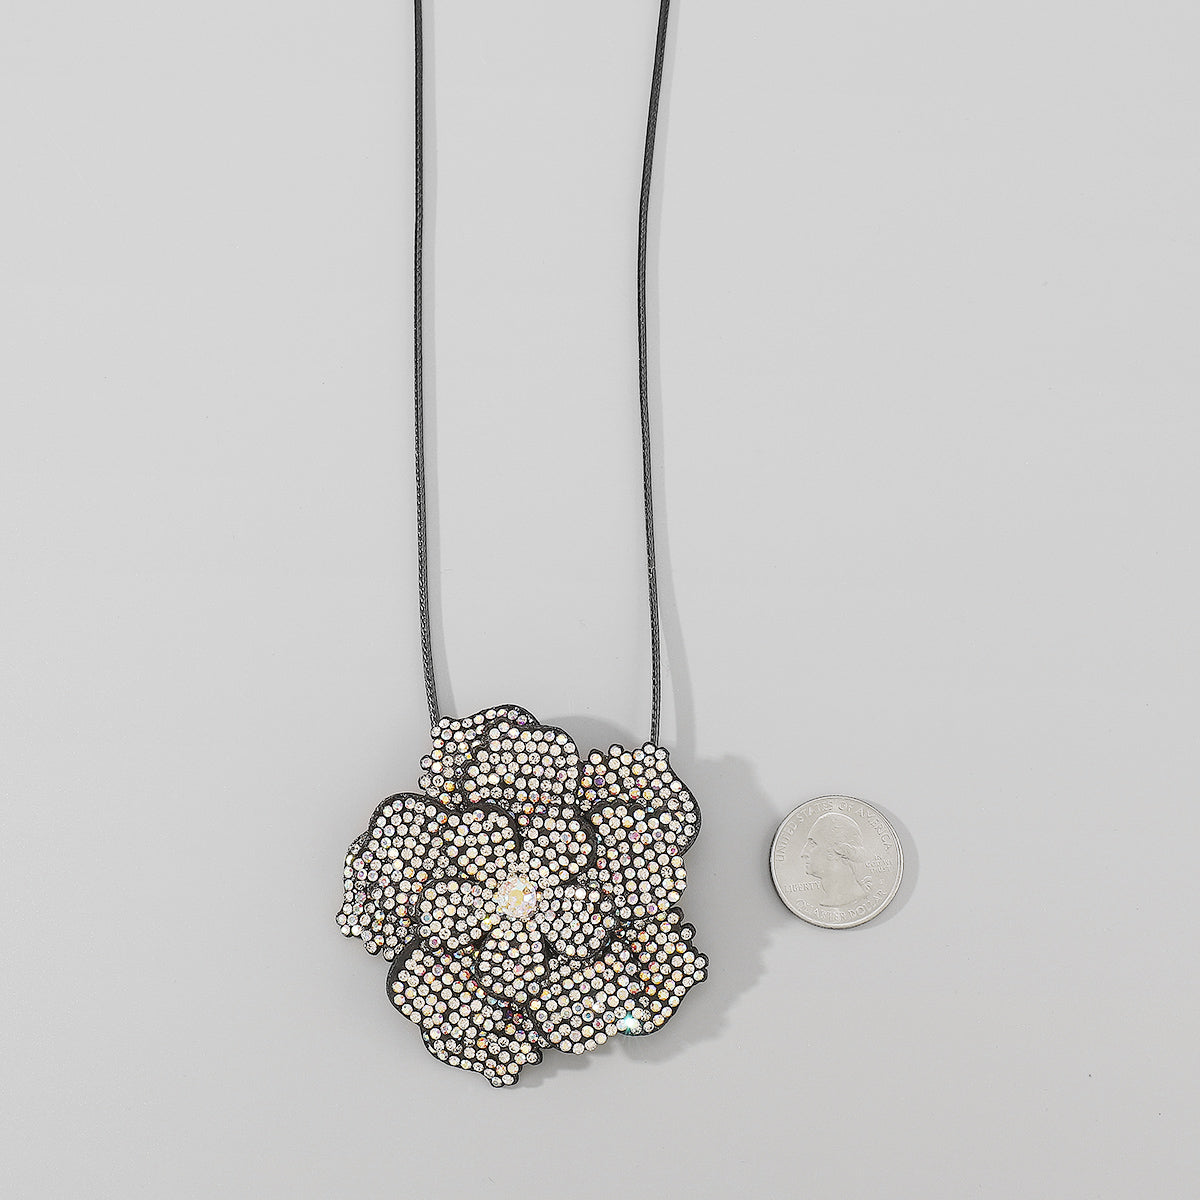 N11541 Shiny Rhinestone Flower Pendant Necklace